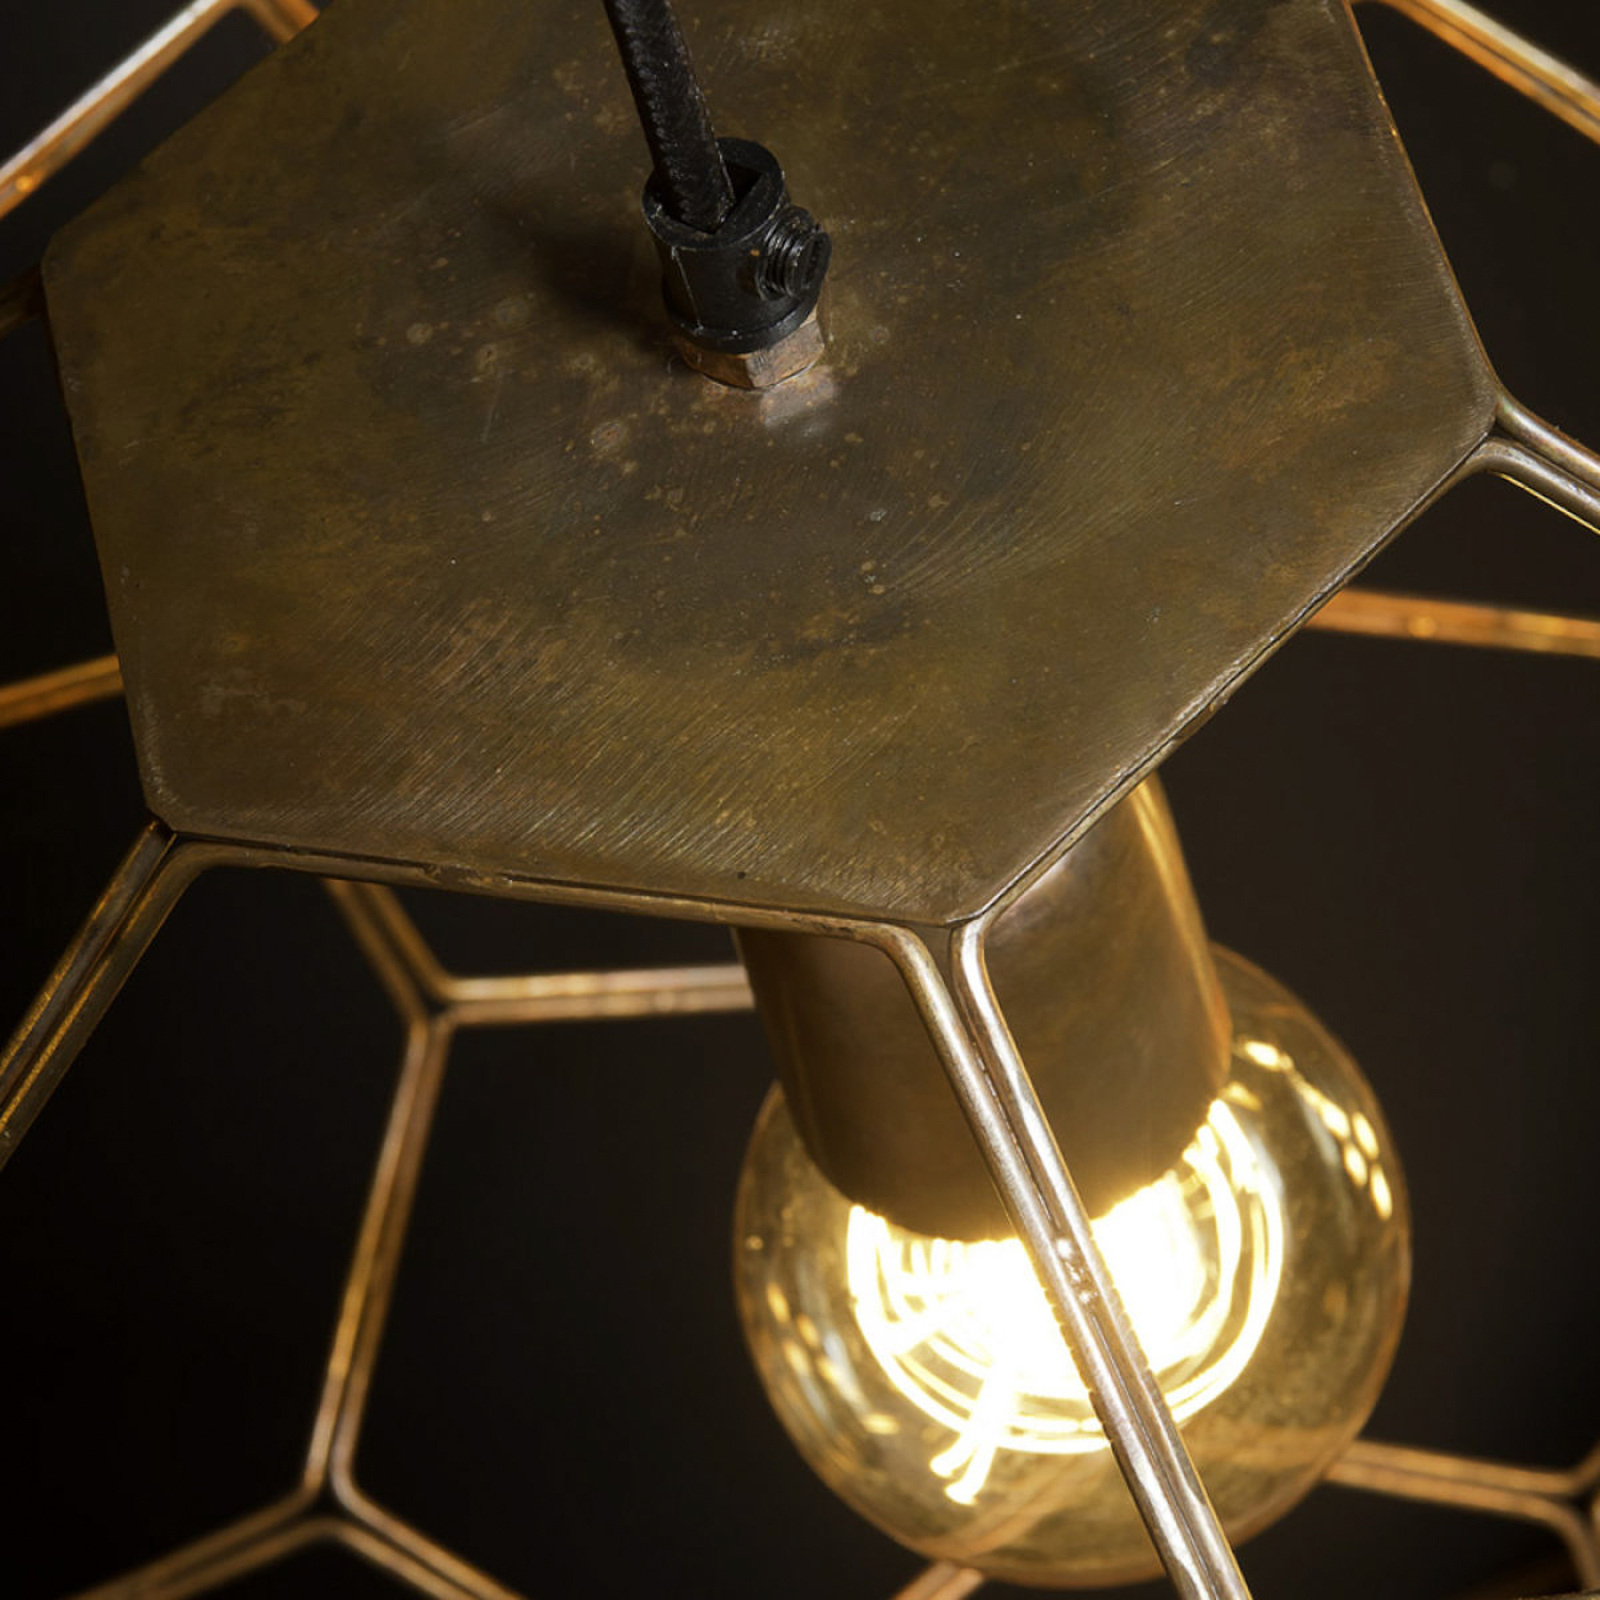 Het gaat om hanglamp Romi Marrakesh, Ø 55 cm